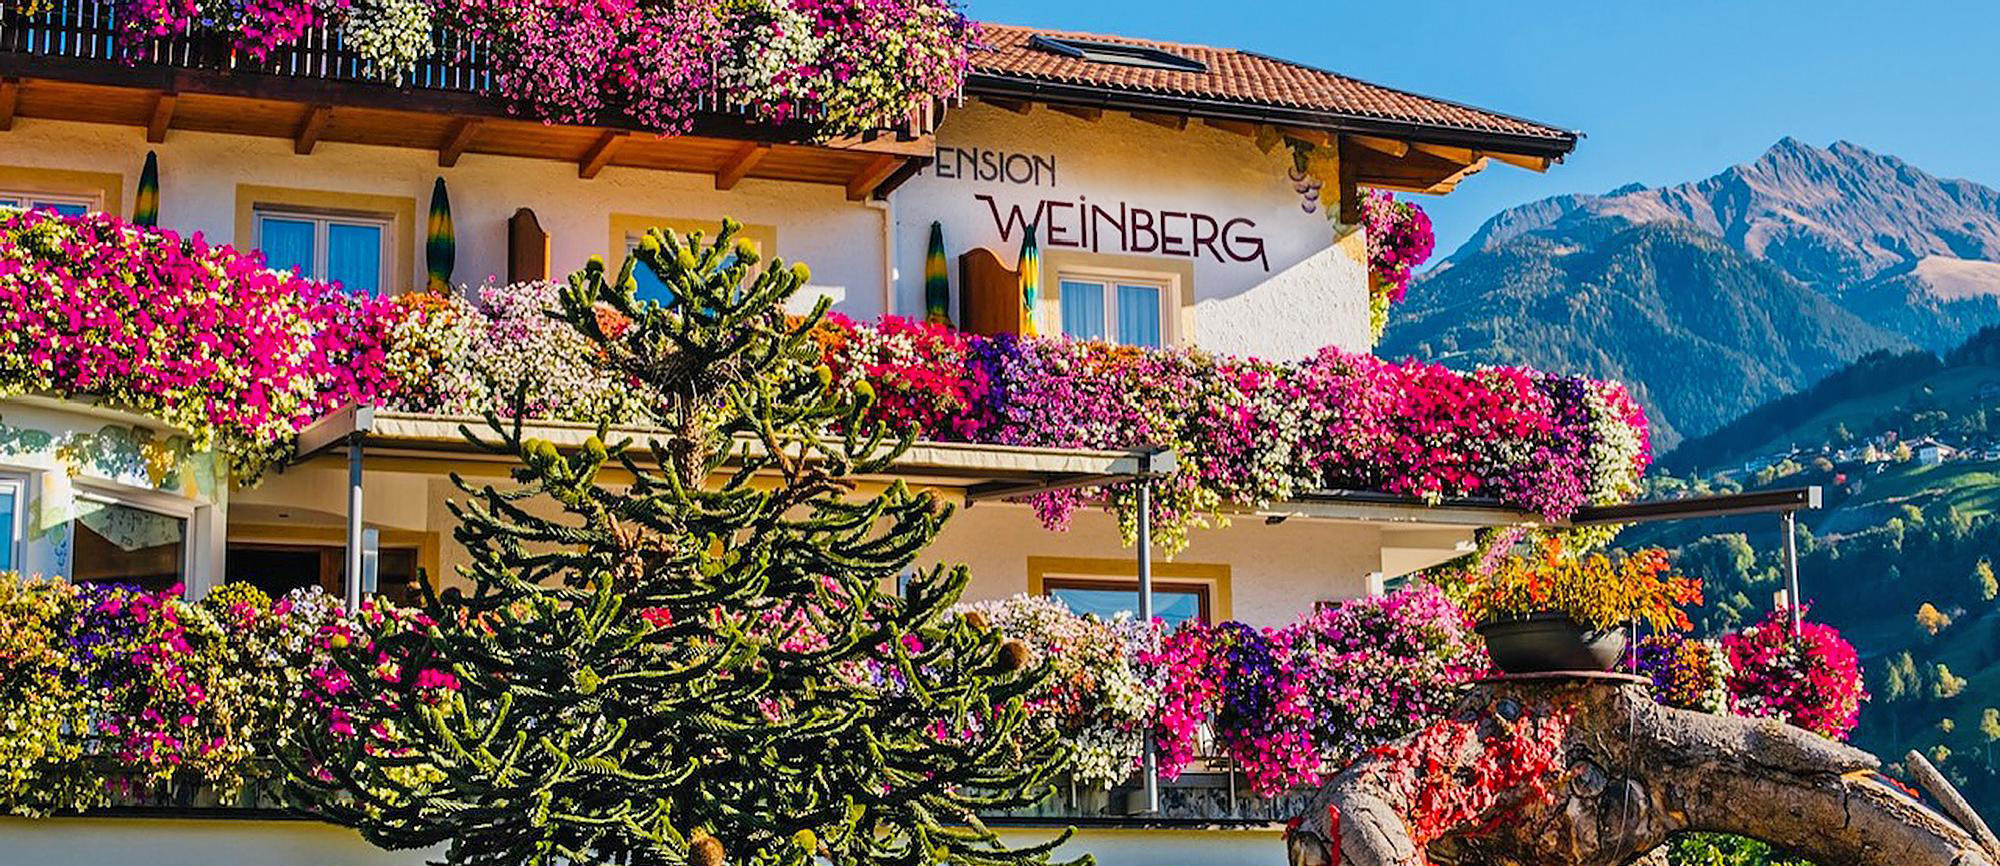 Pensione e ristorante Weinberg a Rifiano